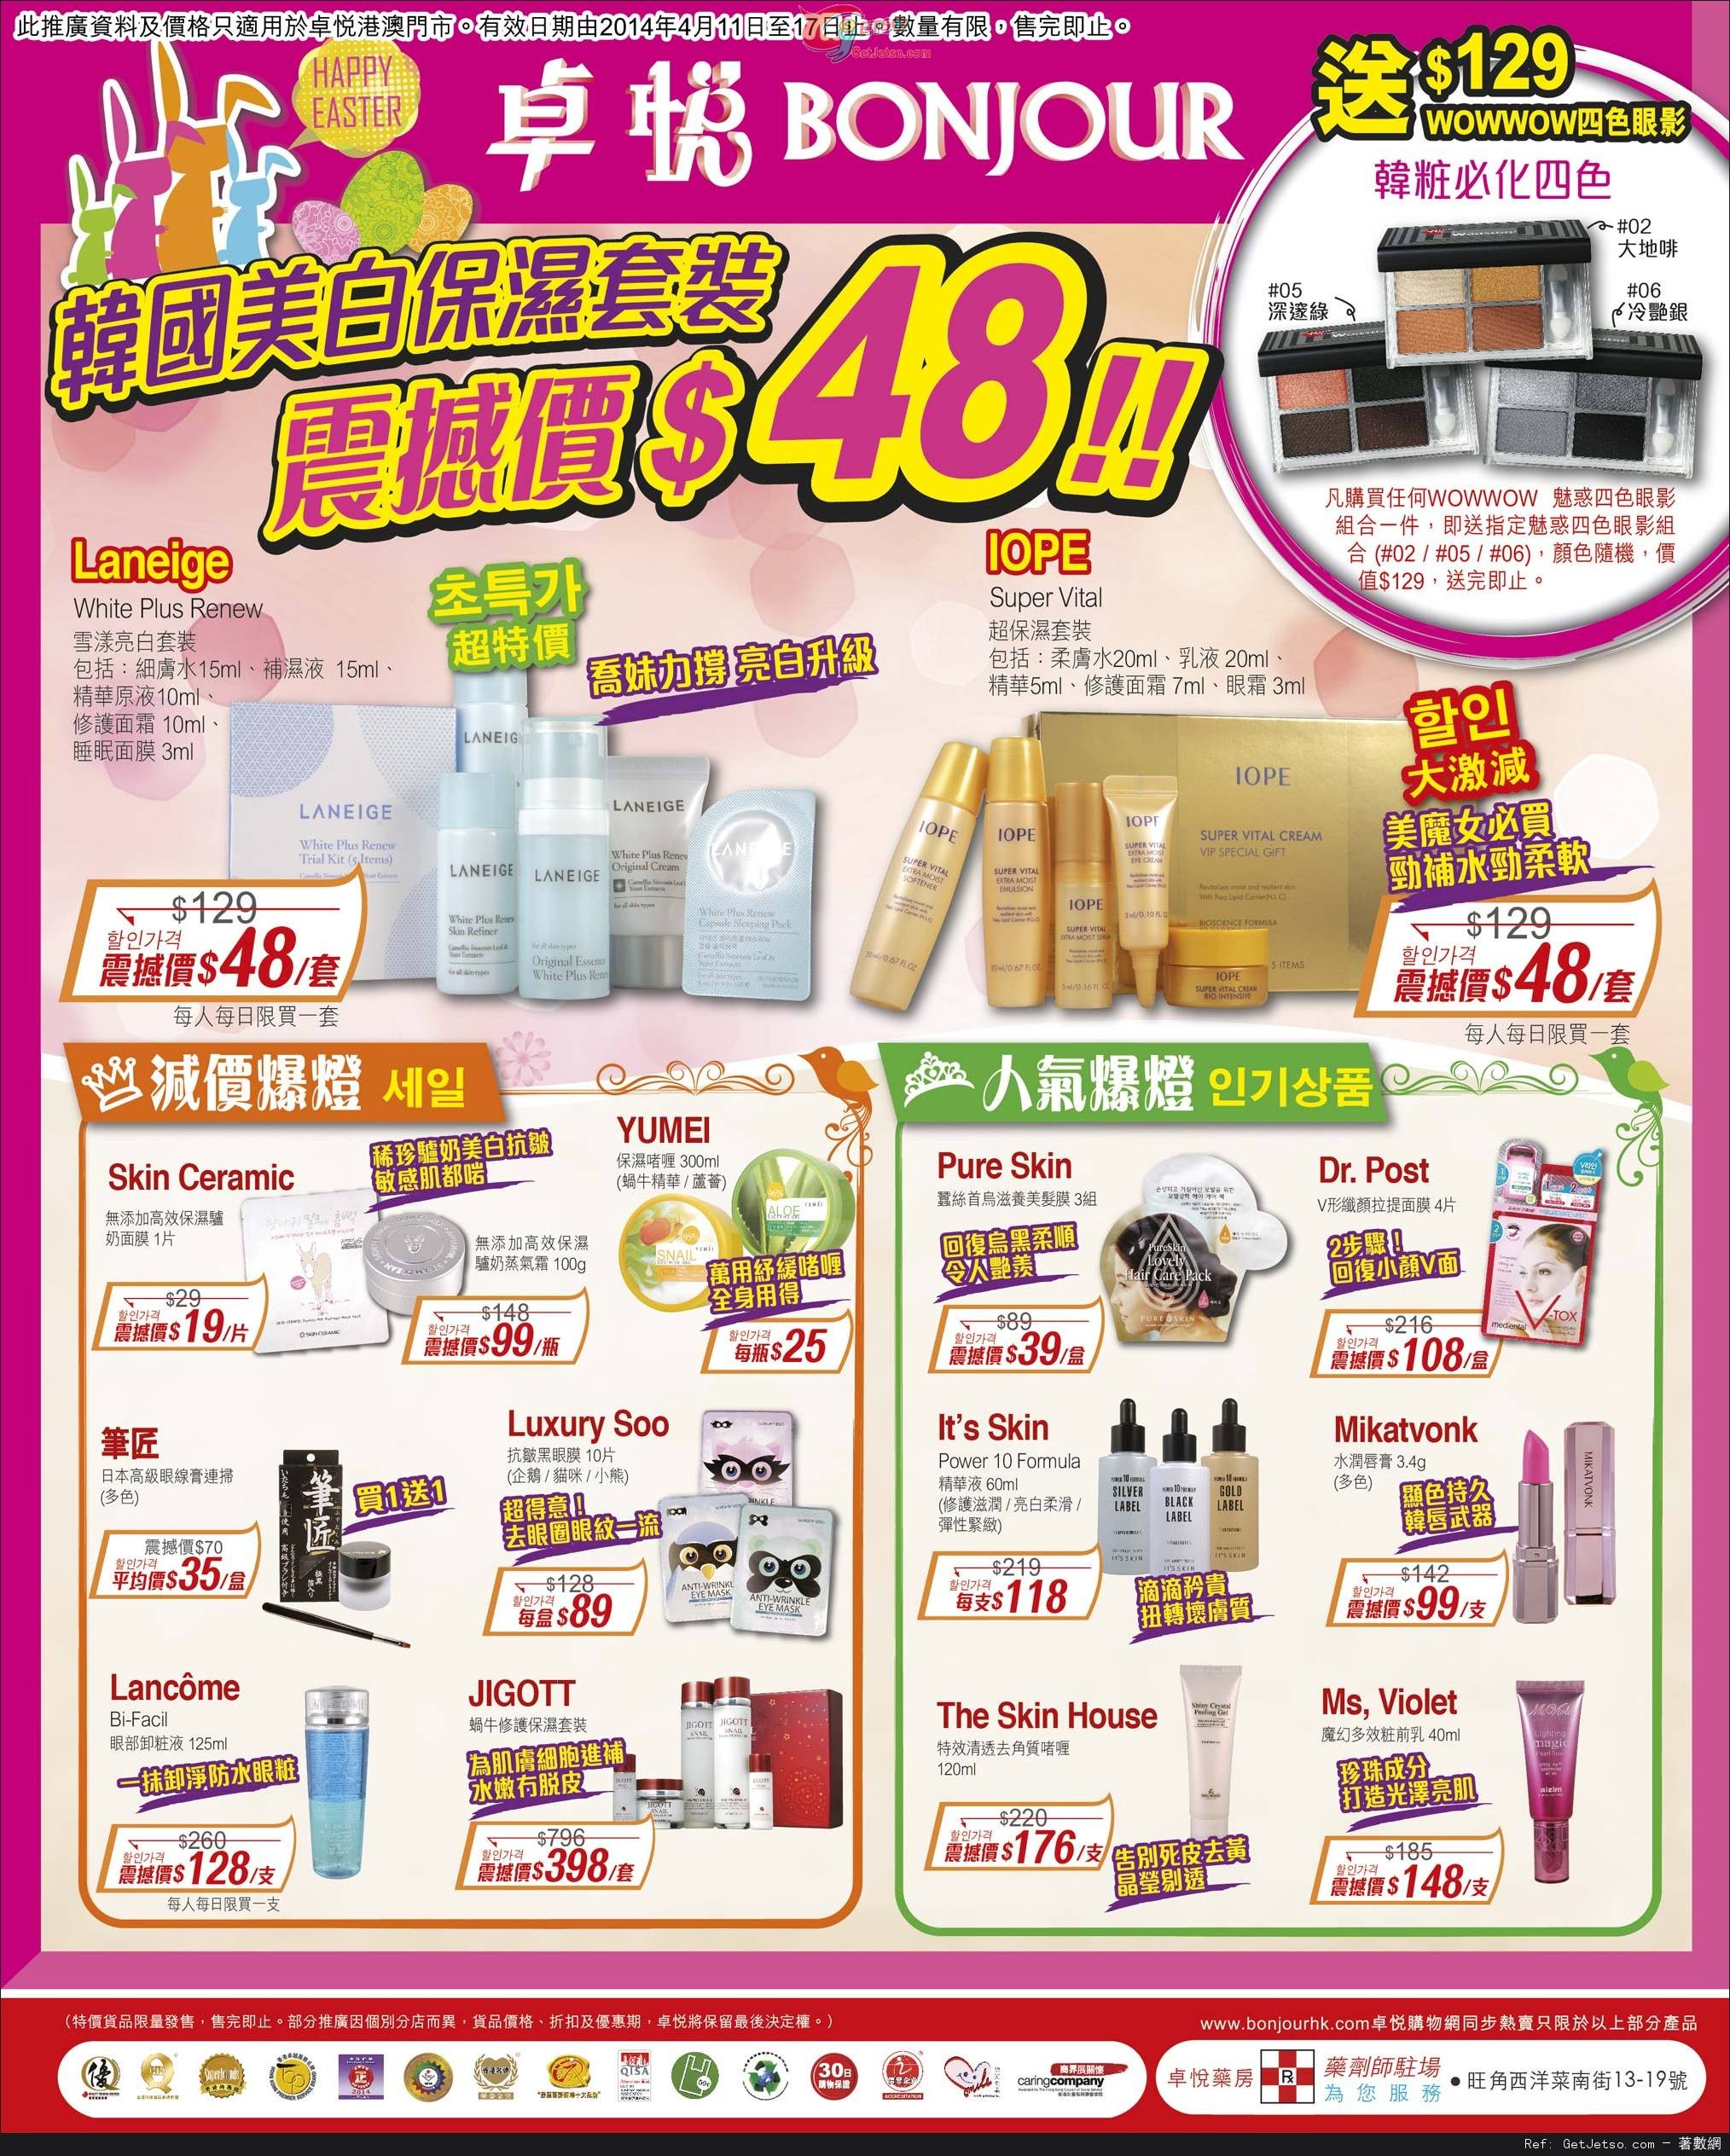 卓悅韓國人氣護膚產品購買優惠(至14年4月17日)圖片1